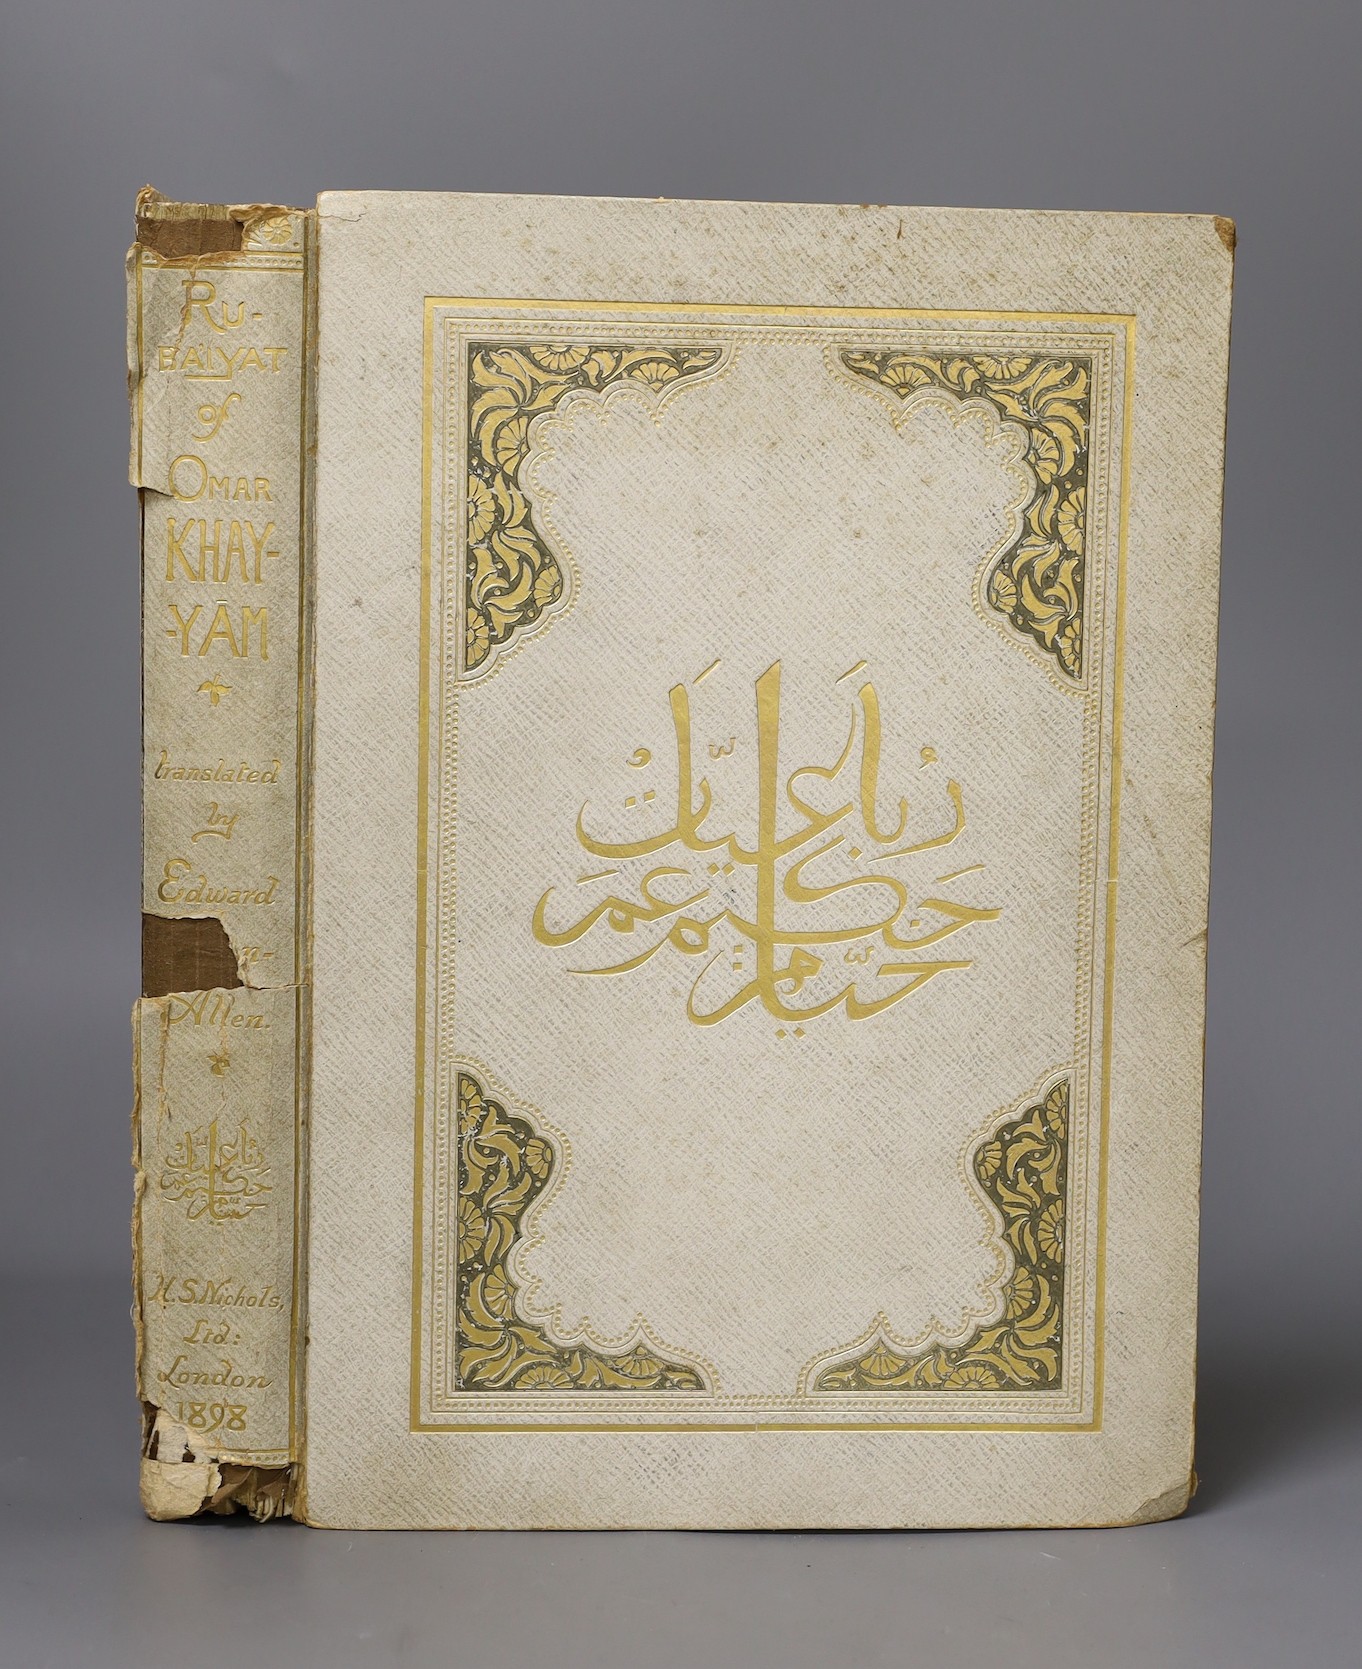 Rubaiyat of Omar Khayyam, translated by Edward Heron-Alan, H.S, Nichols Ltd 1898, decorations of this volume by Ella Hallward